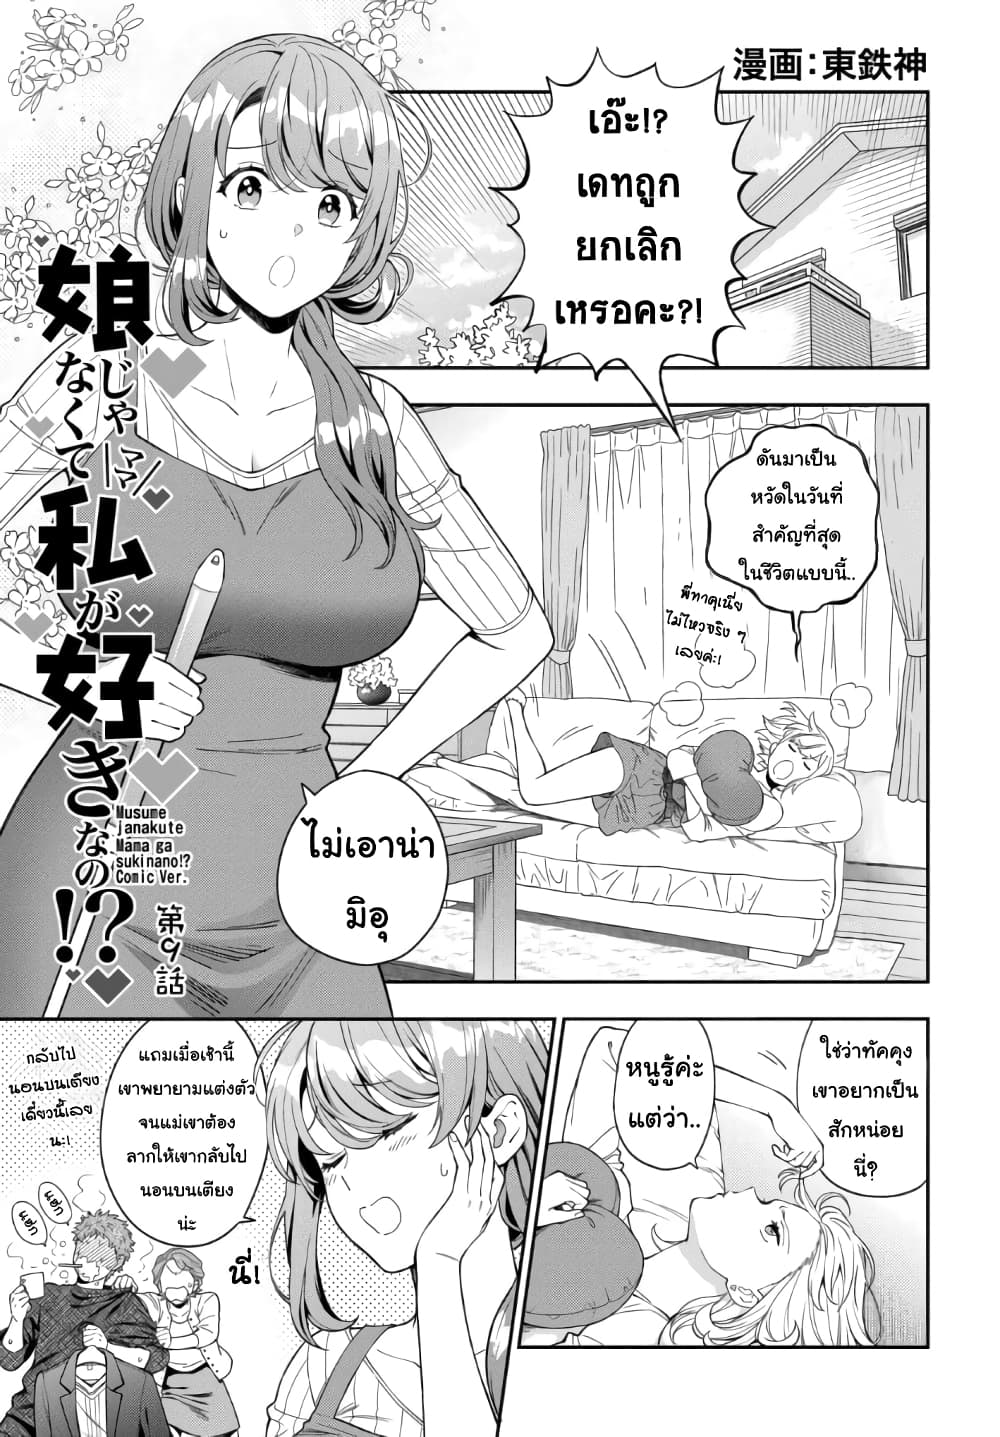 Musume Janakute, Watashi (Mama) ga Suki Nano! 9 1 (1)